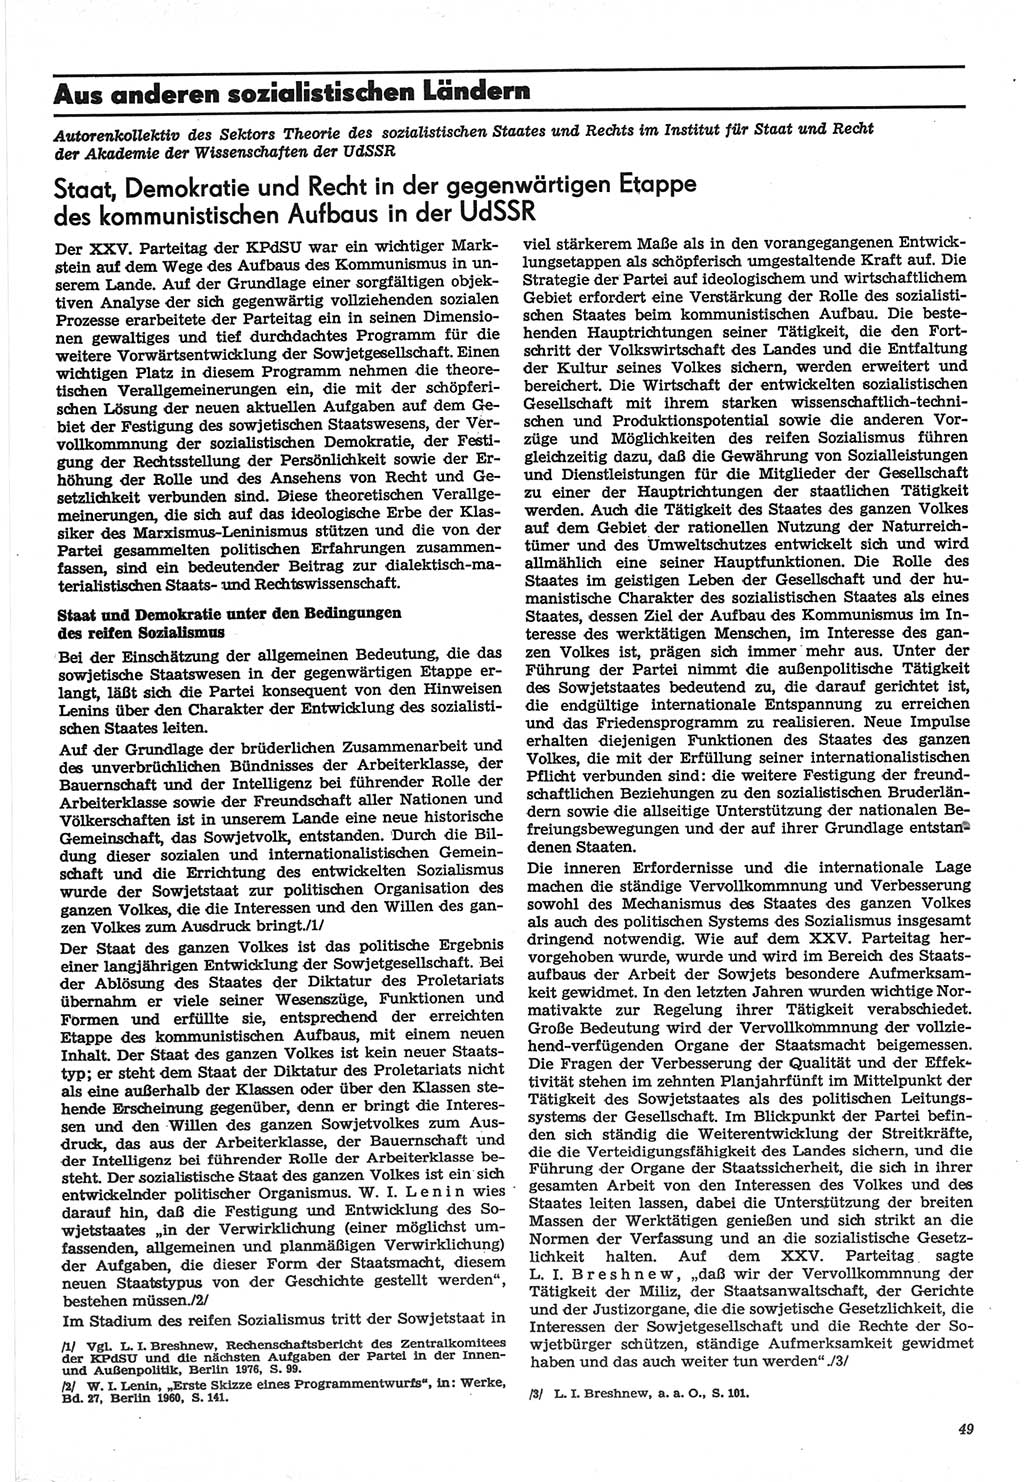 Neue Justiz (NJ), Zeitschrift für Recht und Rechtswissenschaft-Zeitschrift, sozialistisches Recht und Gesetzlichkeit, 31. Jahrgang 1977, Seite 49 (NJ DDR 1977, S. 49)